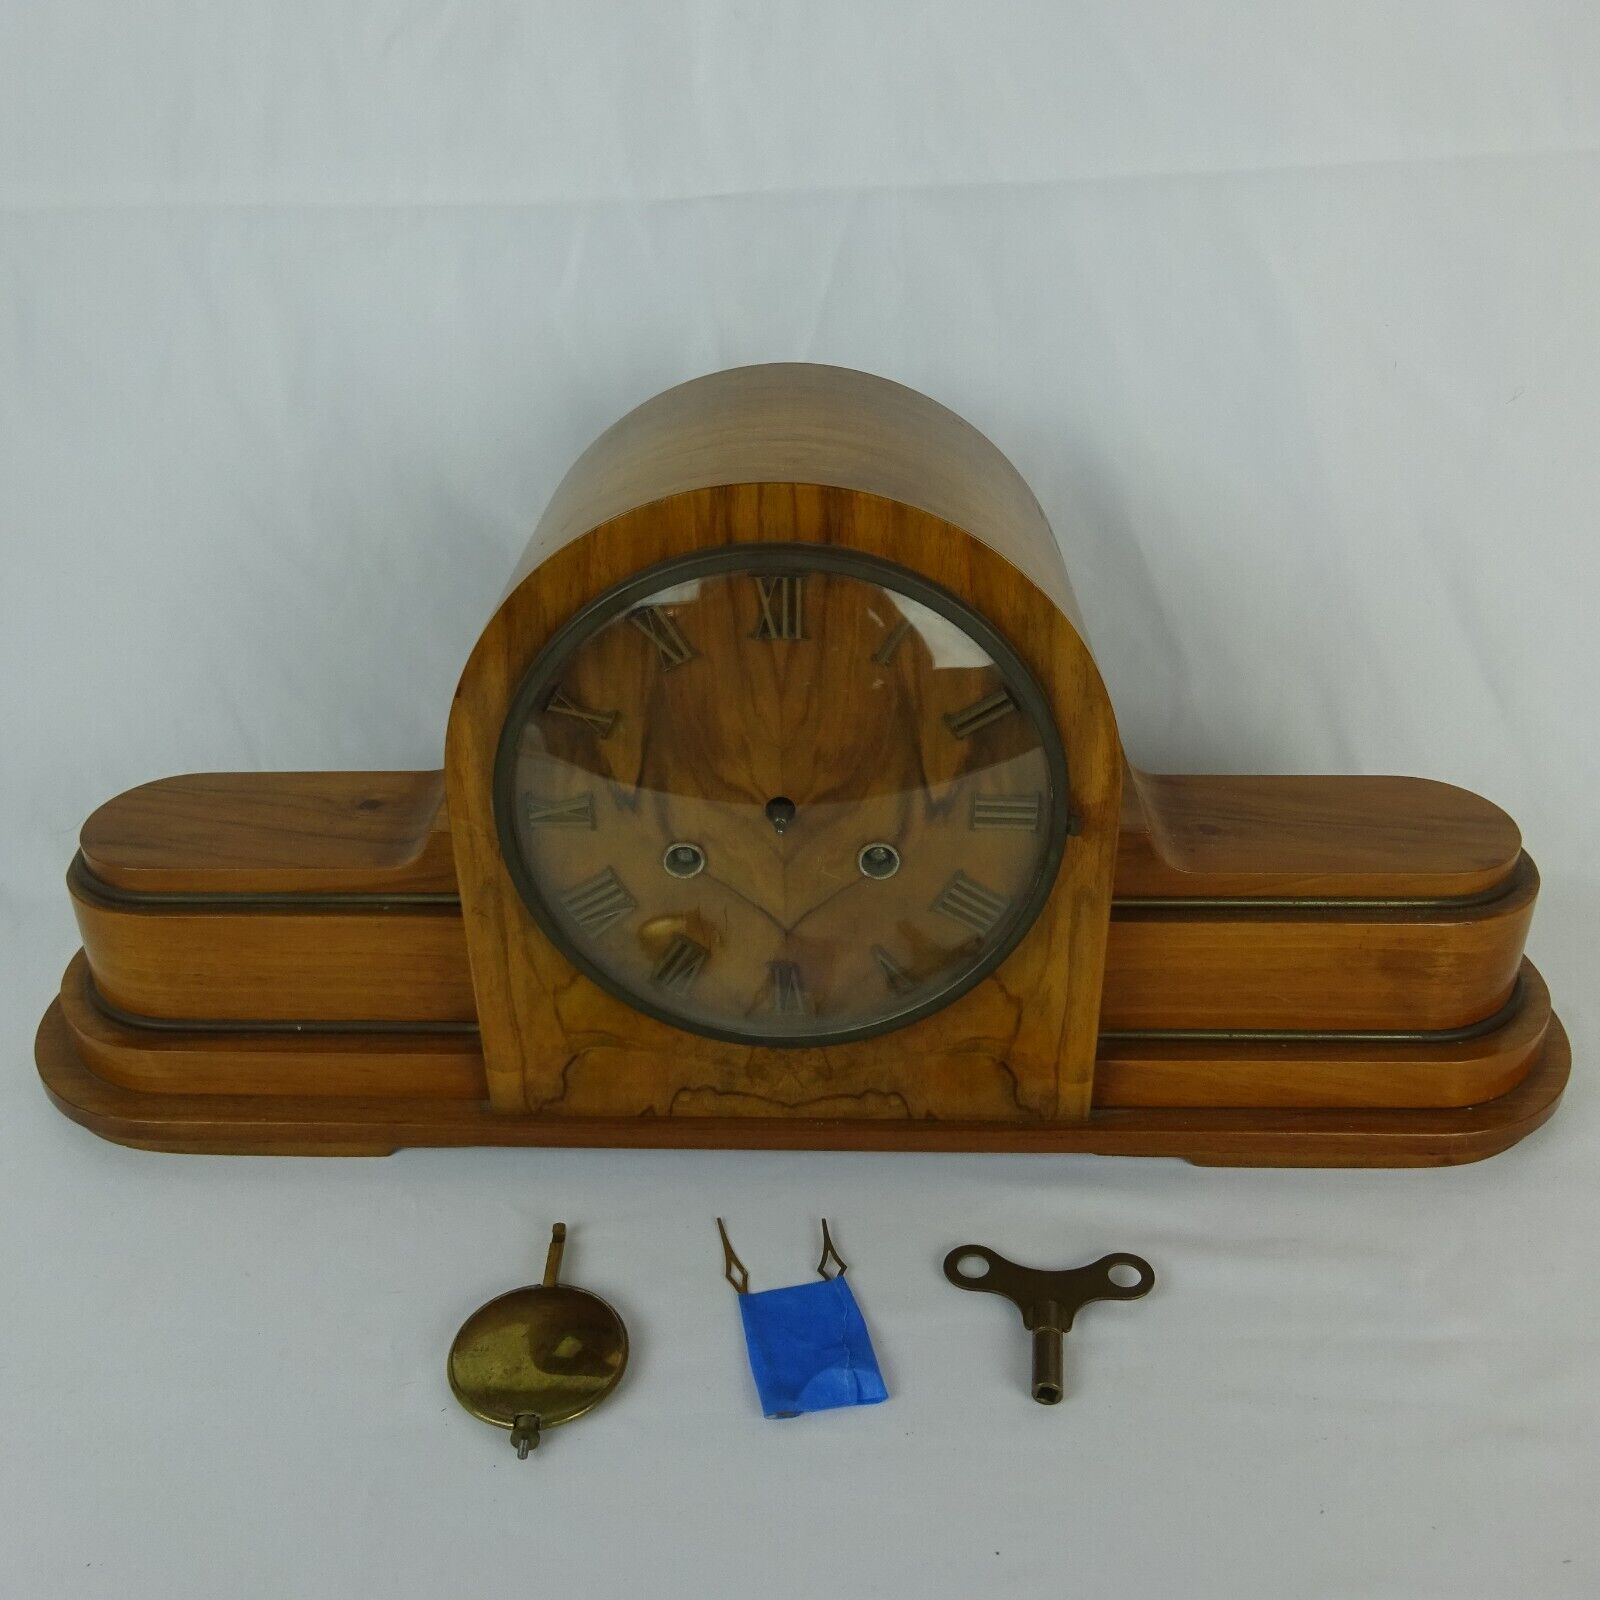 Vintage Danish Art Deco Wood Mantle Clock British Made Mechanical Chime ~ Repair